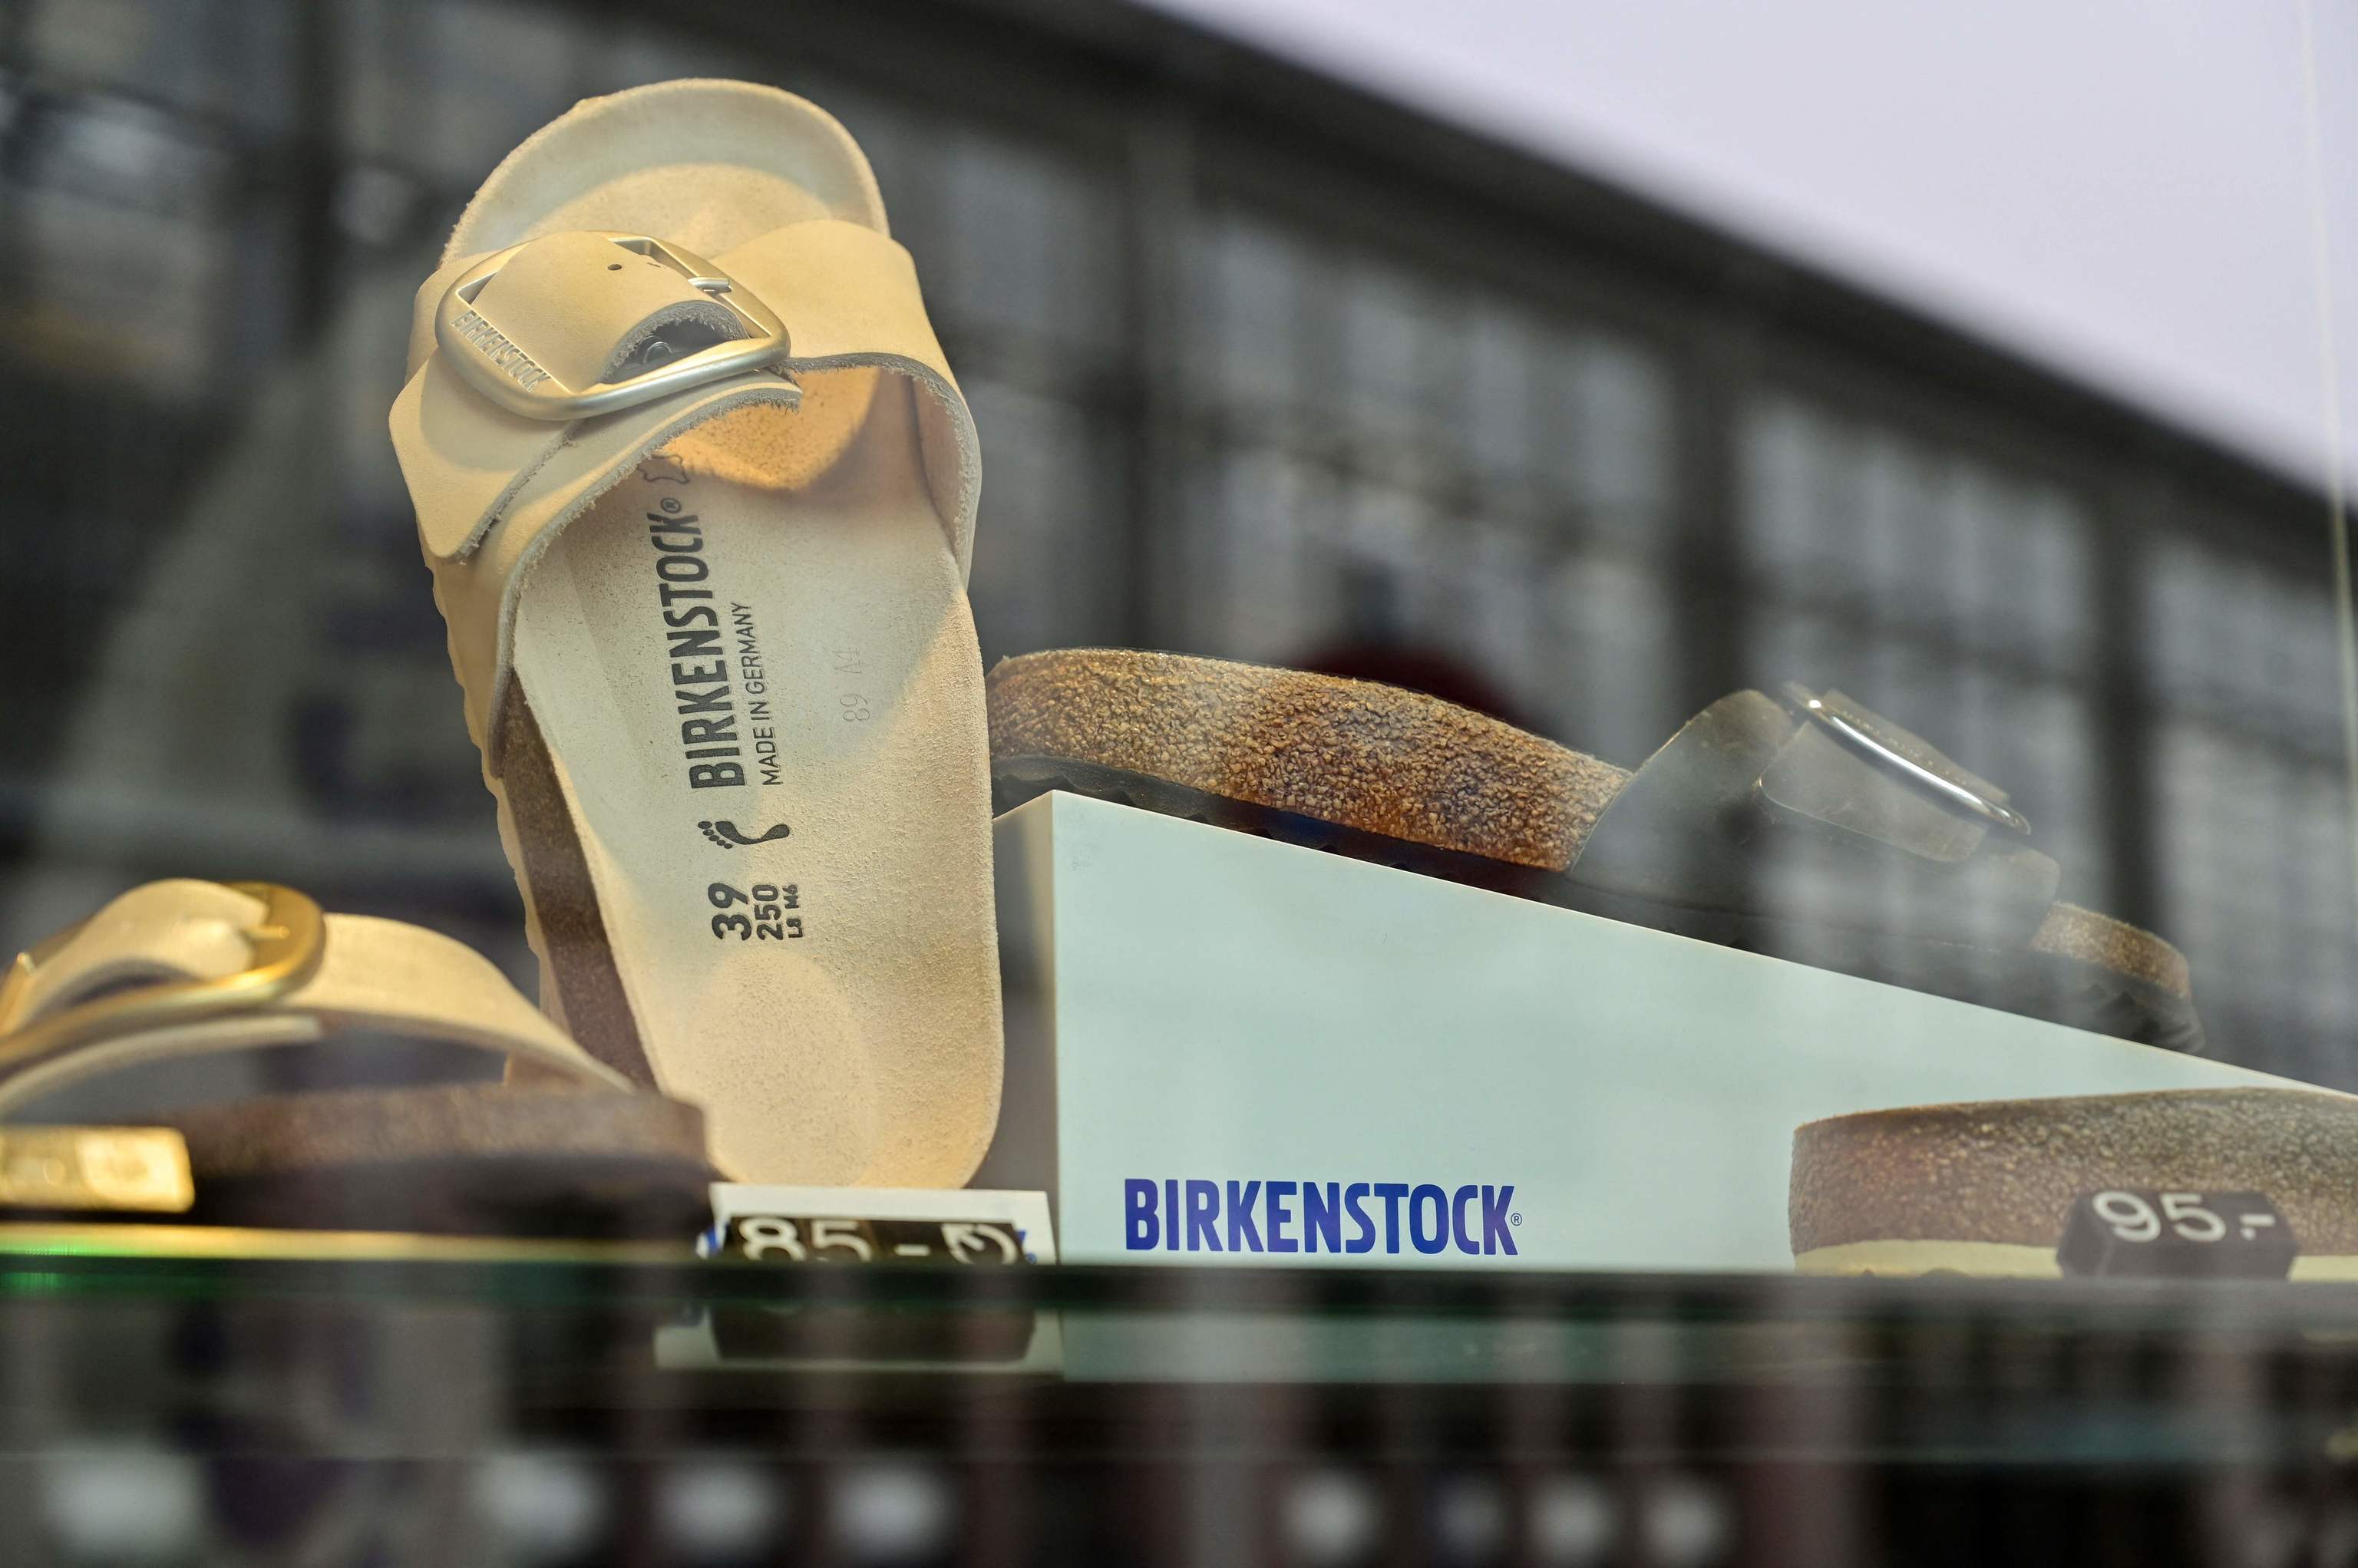 Sandalias de la marca Birkenstock.